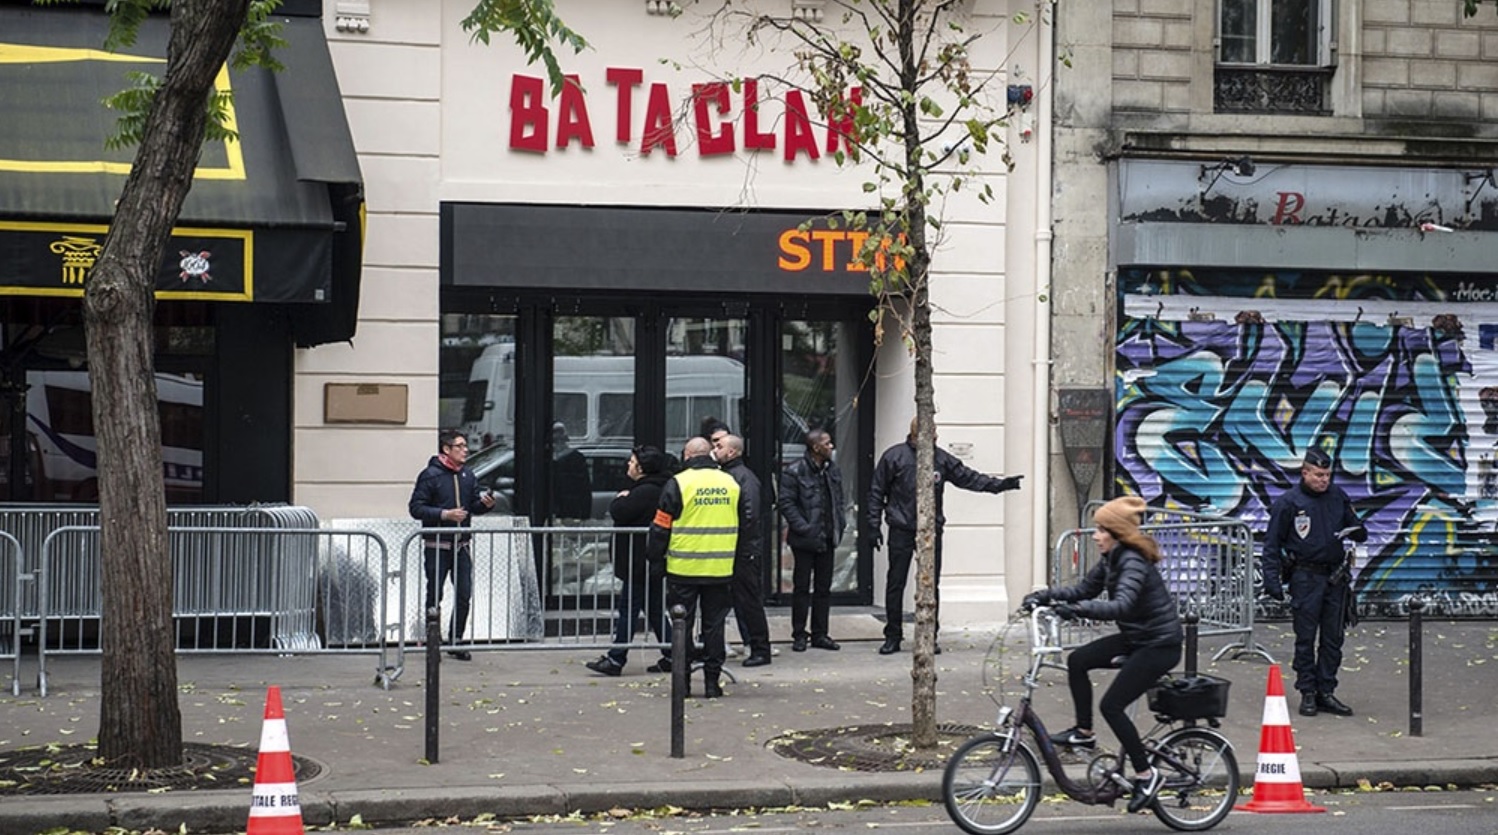 Seis detenidos por el robo de una obra de Banksy a la sala Bataclan